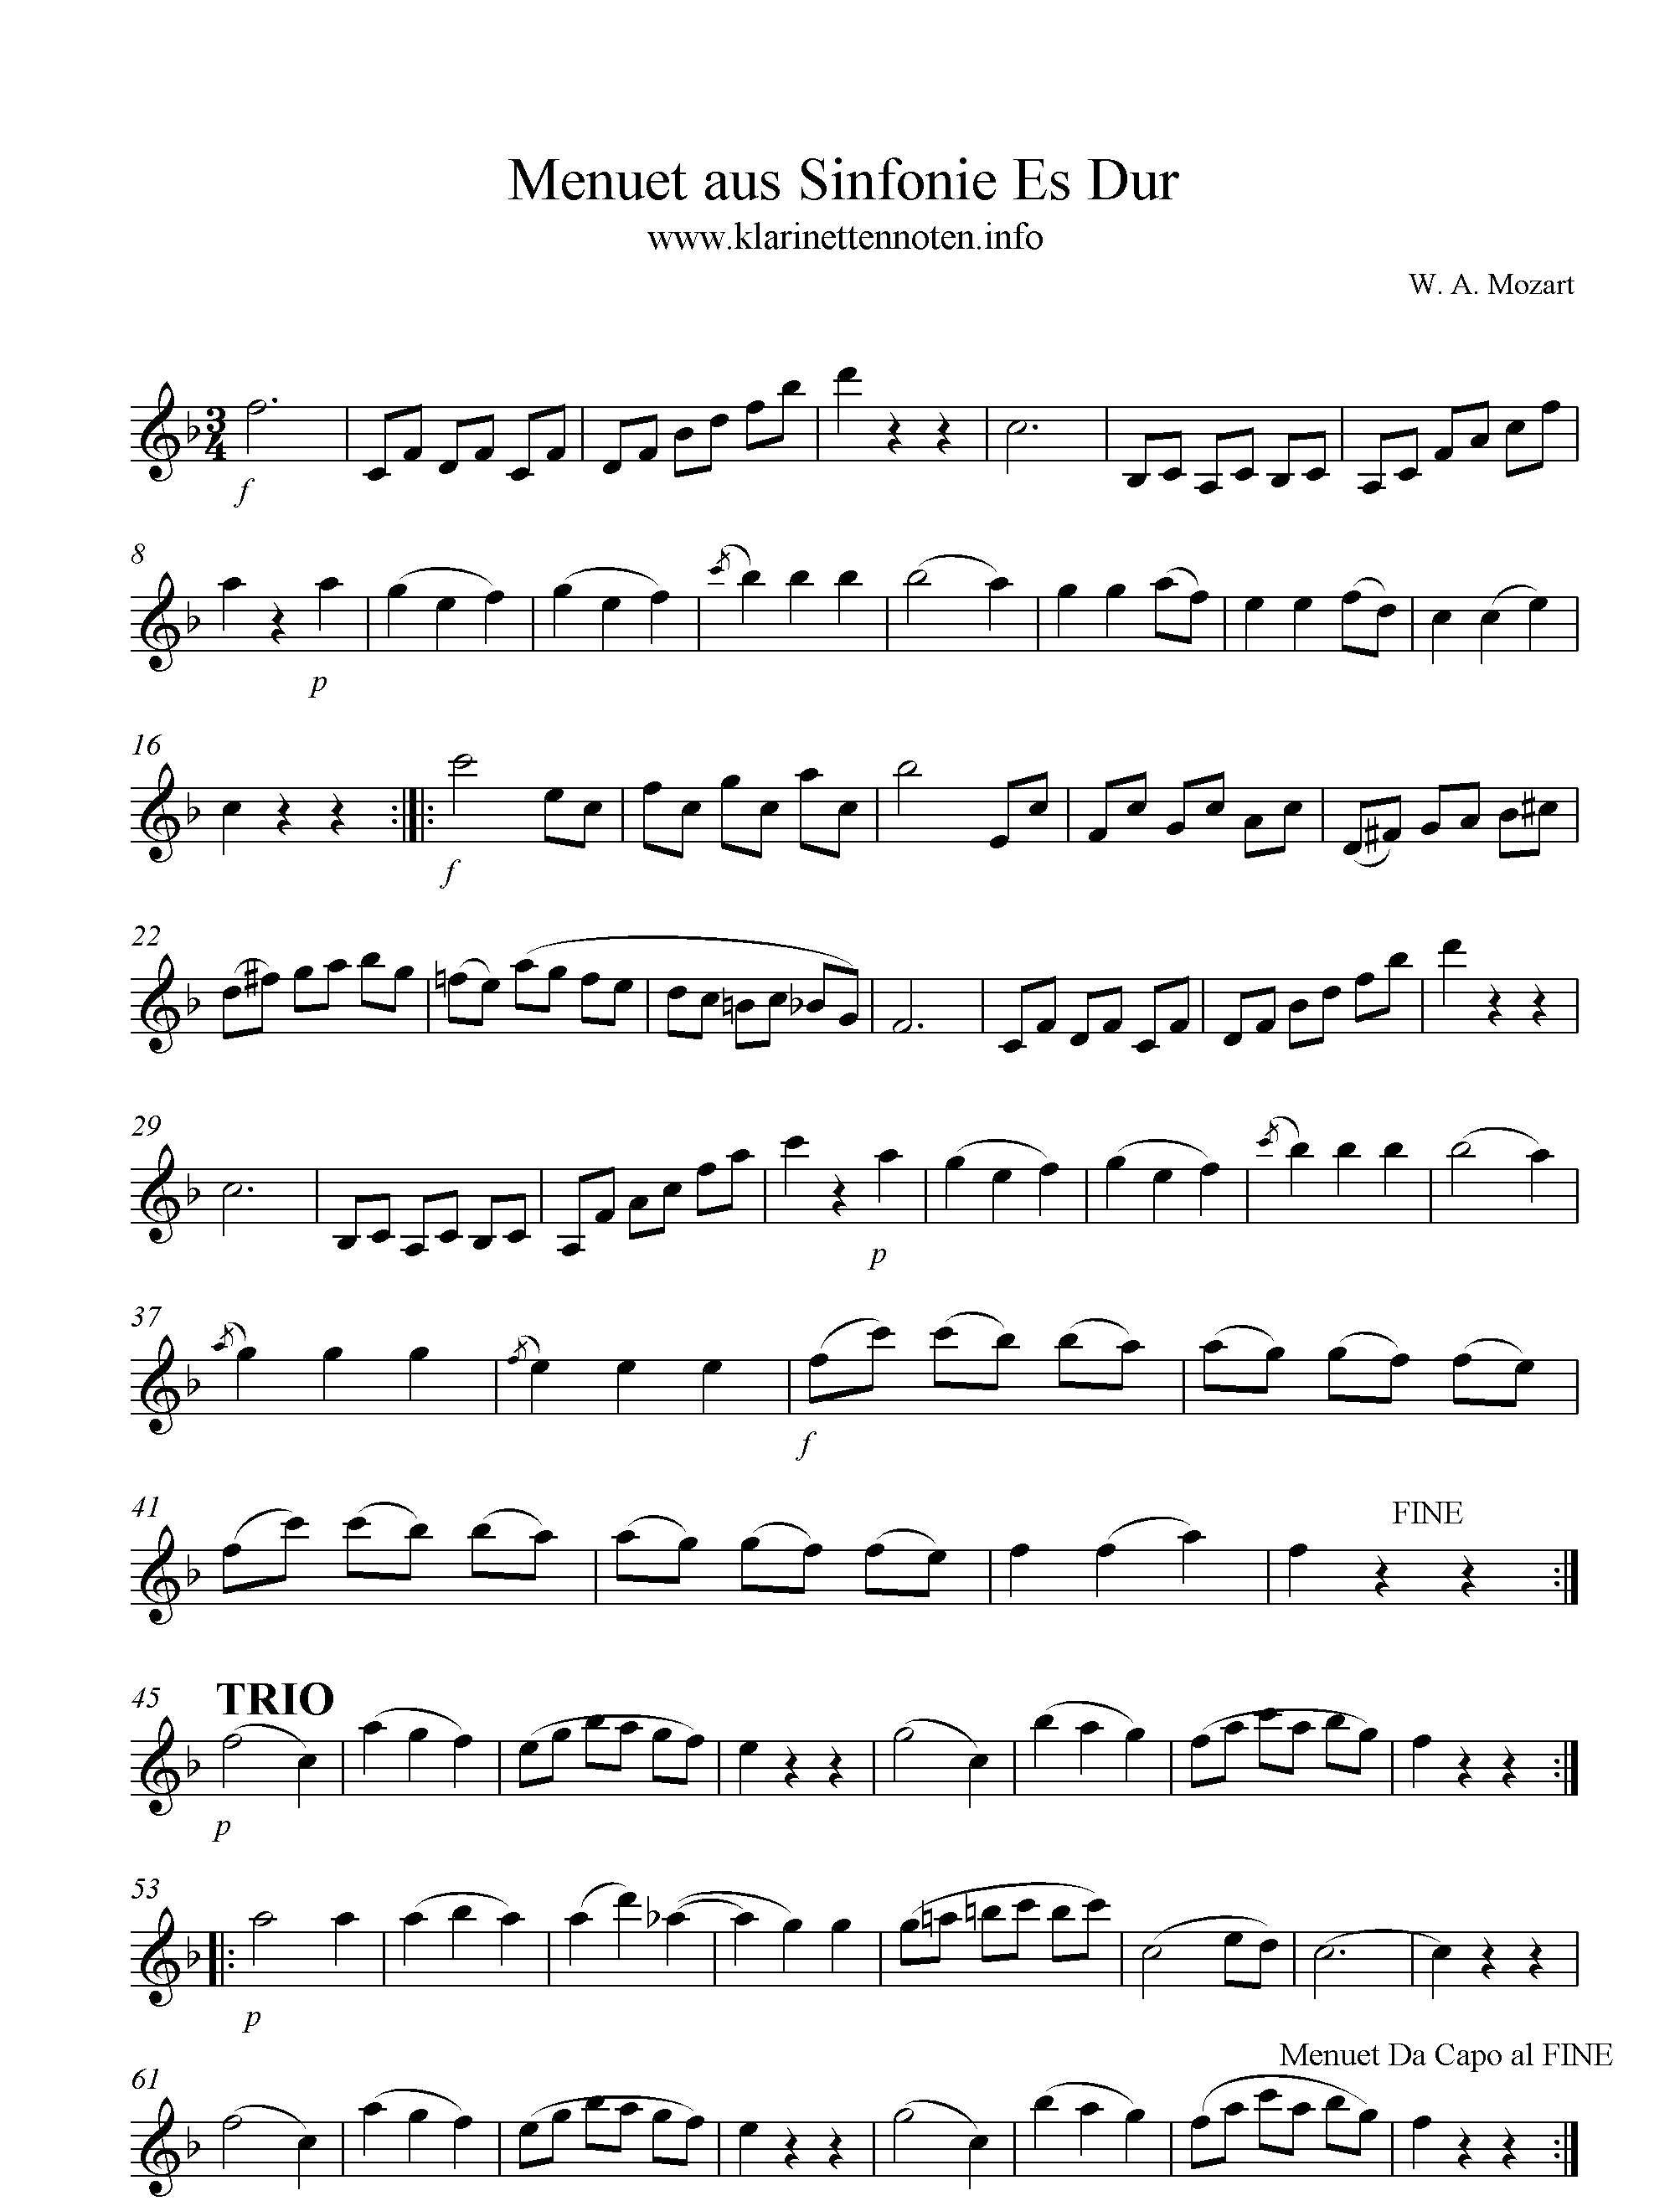 Menuet aus Sinfonie in Es, W. A. Mozart, Clarinet, Klarinette